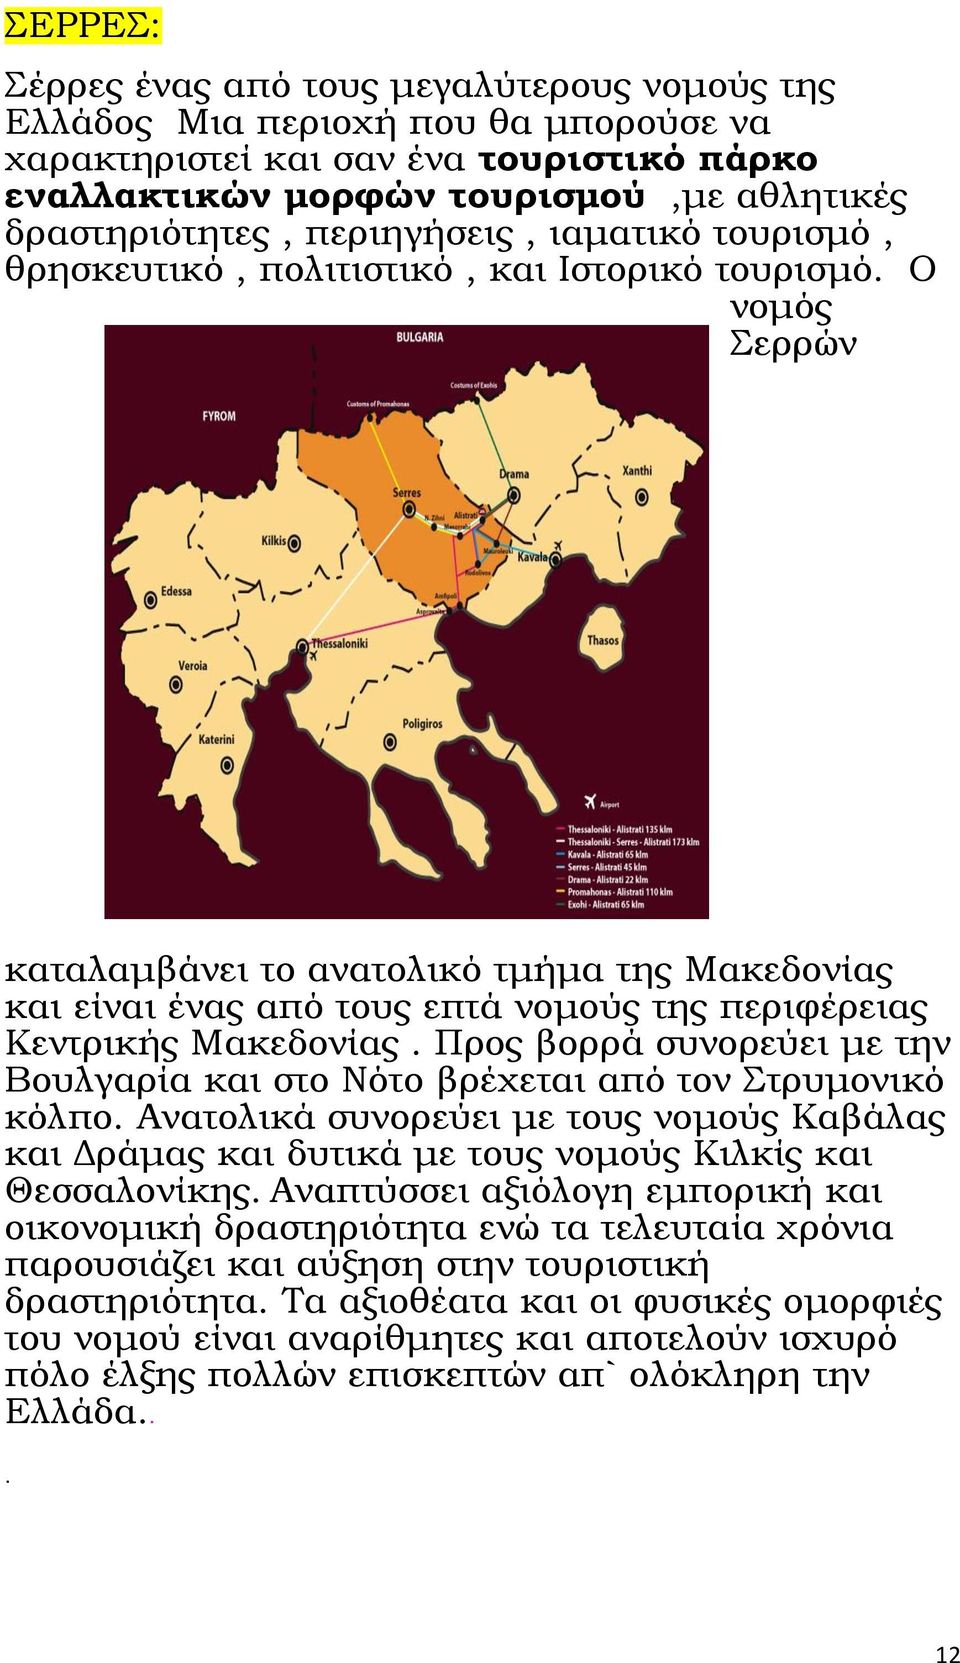 Ο νομός ερρών καταλαμβάνει το ανατολικό τμήμα της Μακεδονίας και είναι ένας από τους επτά νομούς της περιφέρειας Κεντρικής Μακεδονίας.